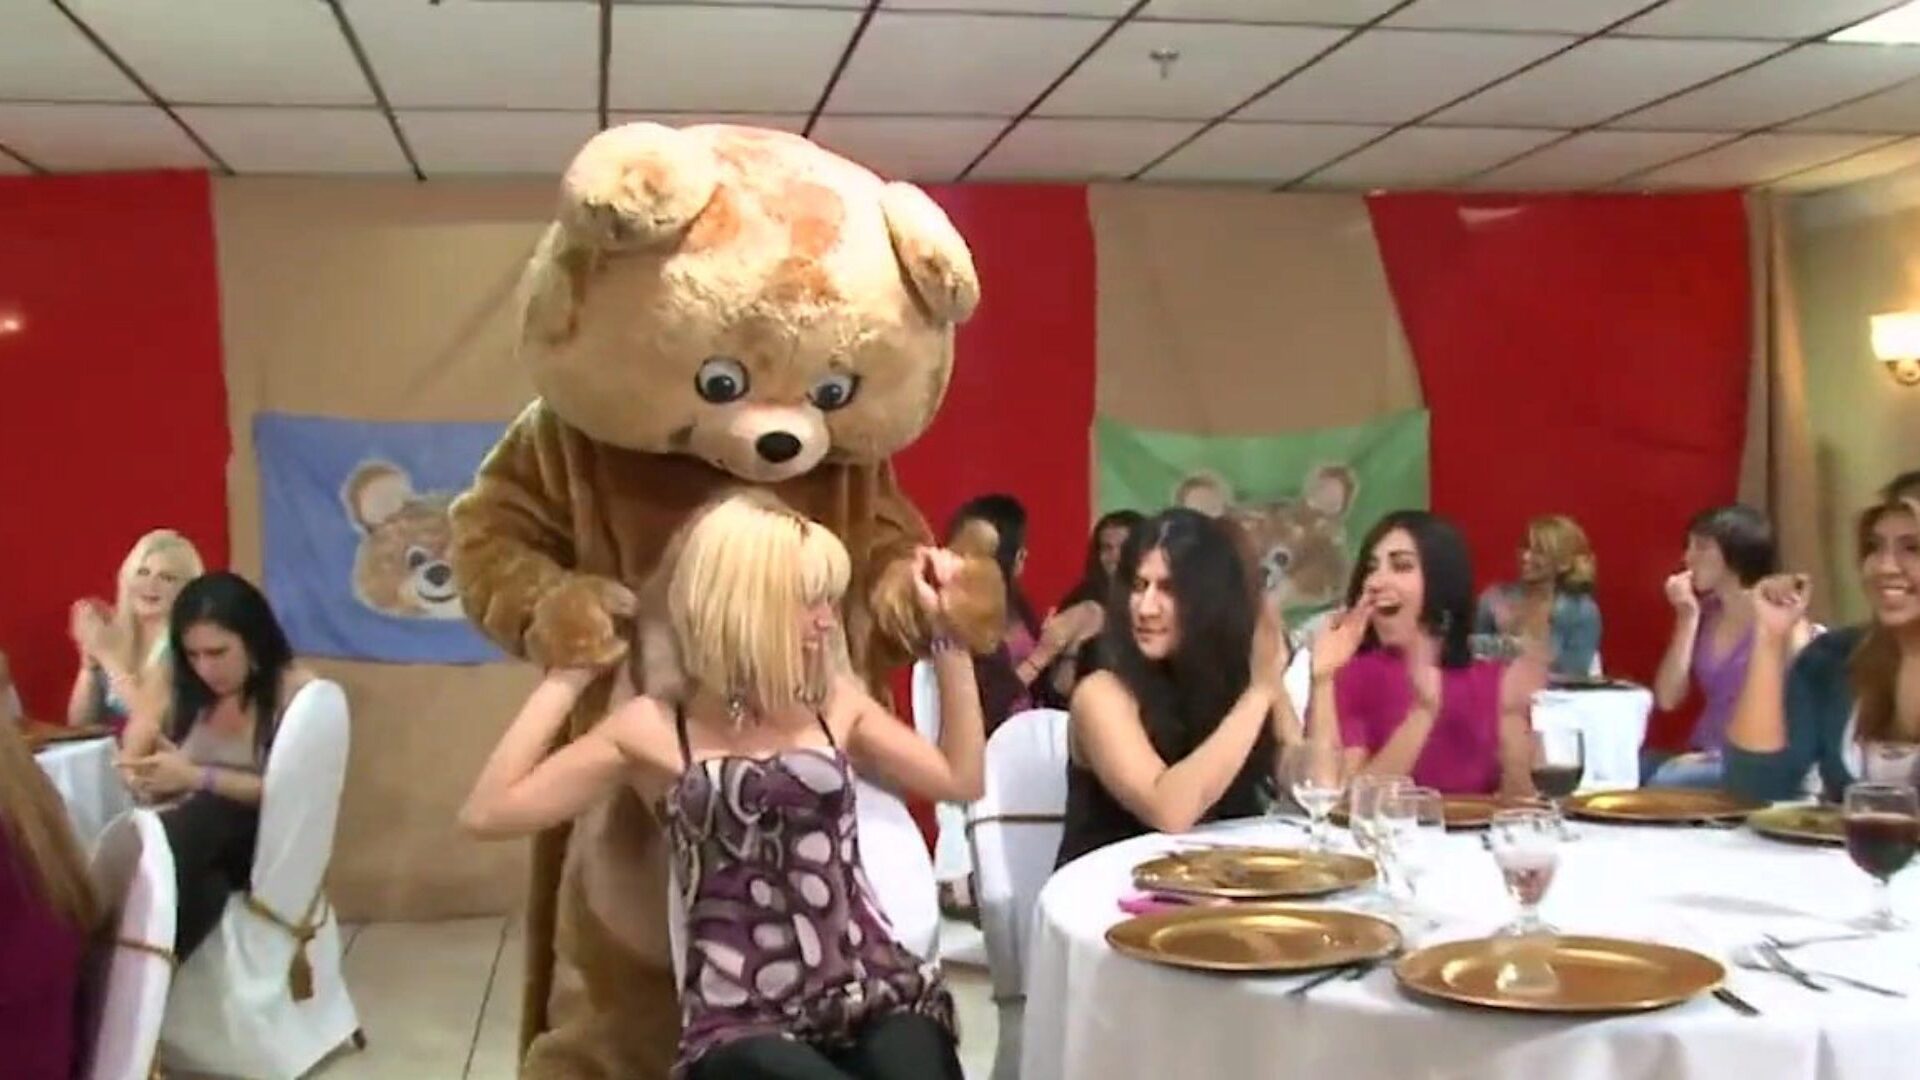 ours dansant - un groupe de femmes excitées suce des bites de strip-teaseuse lors d'une fête